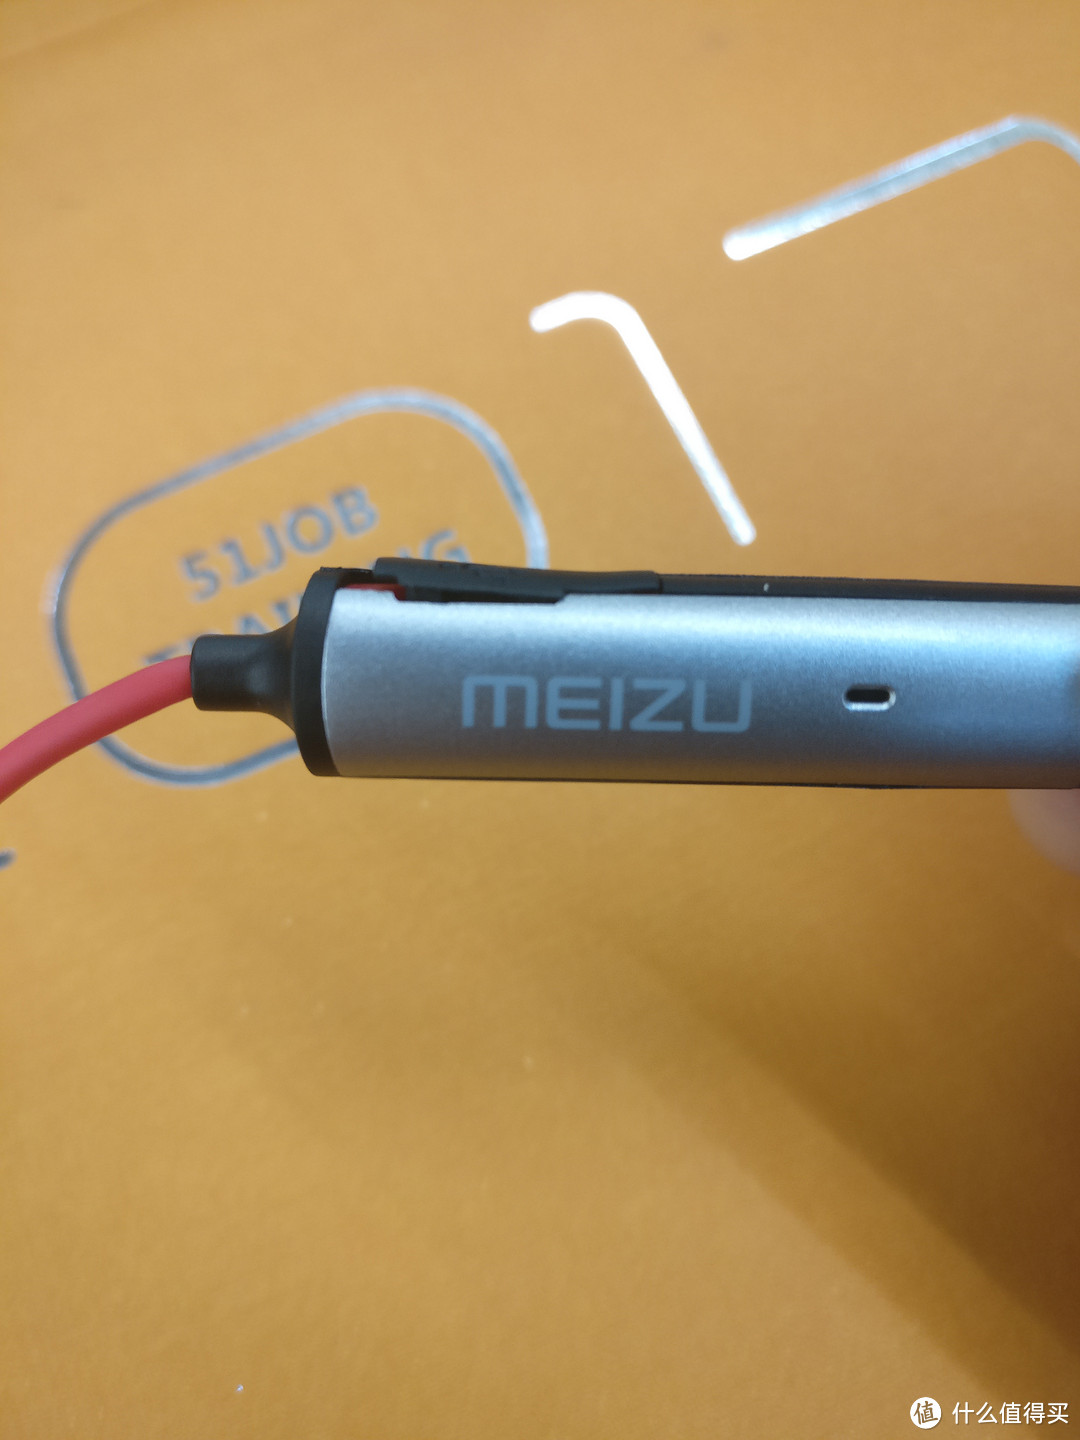 迟来的开箱 — MEIZU 魅族 EP51 运动蓝牙耳机艰难入手记